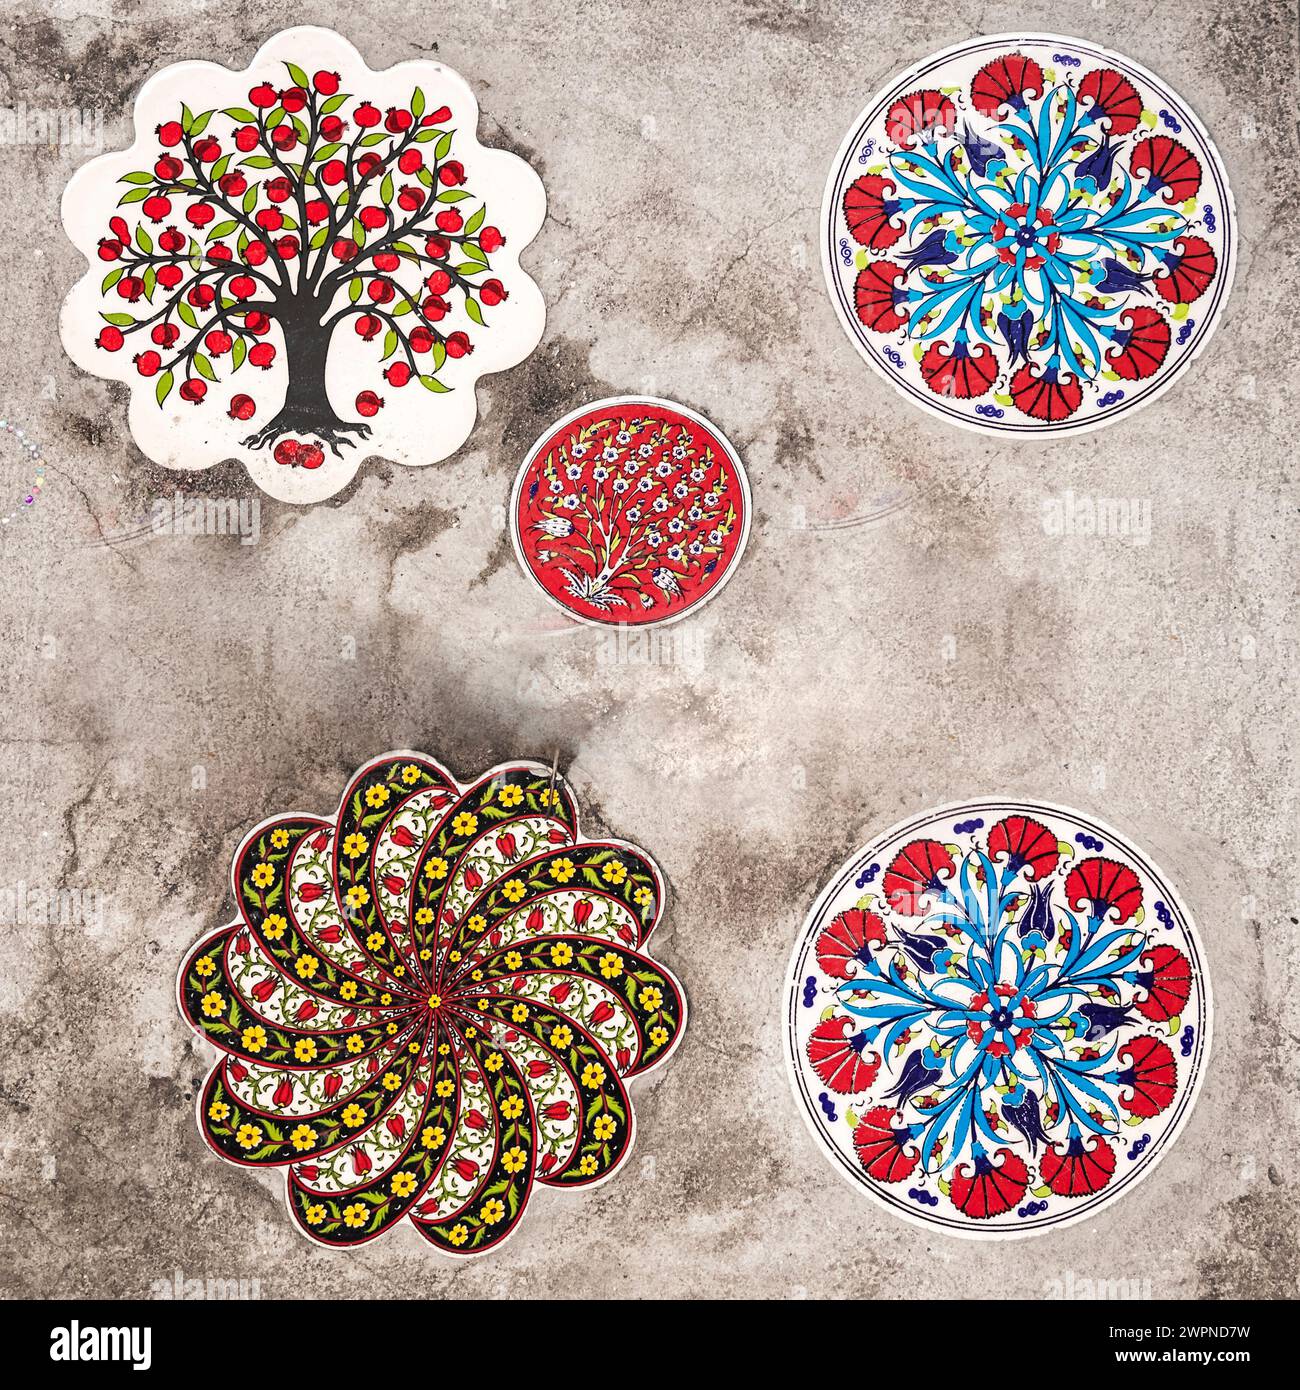 Eine schöne künstlerische Darstellung der Verarbeitung türkischer Keramik, die auf einem Straßengüter angebracht wurde Stockfoto